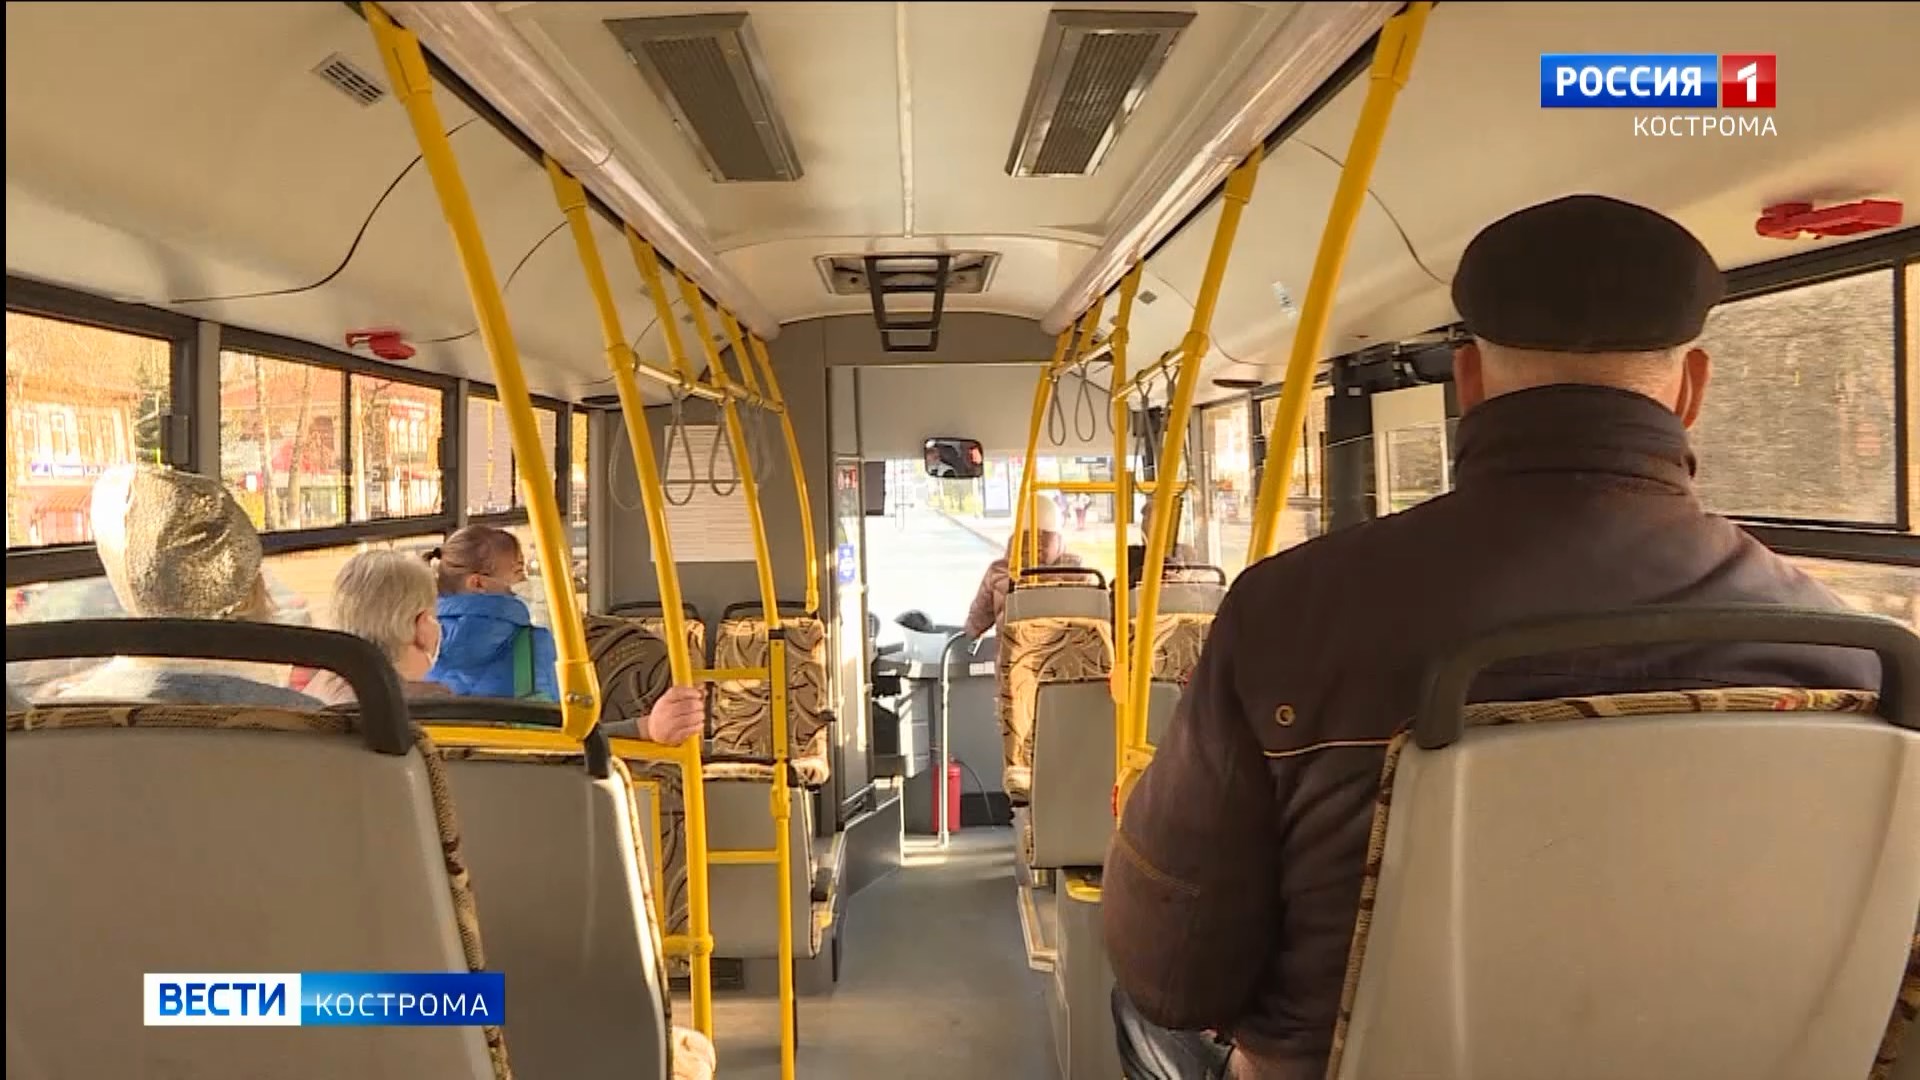 Ради первомайского шествия в Костроме изменится схема движения ряда автобусных маршрутов